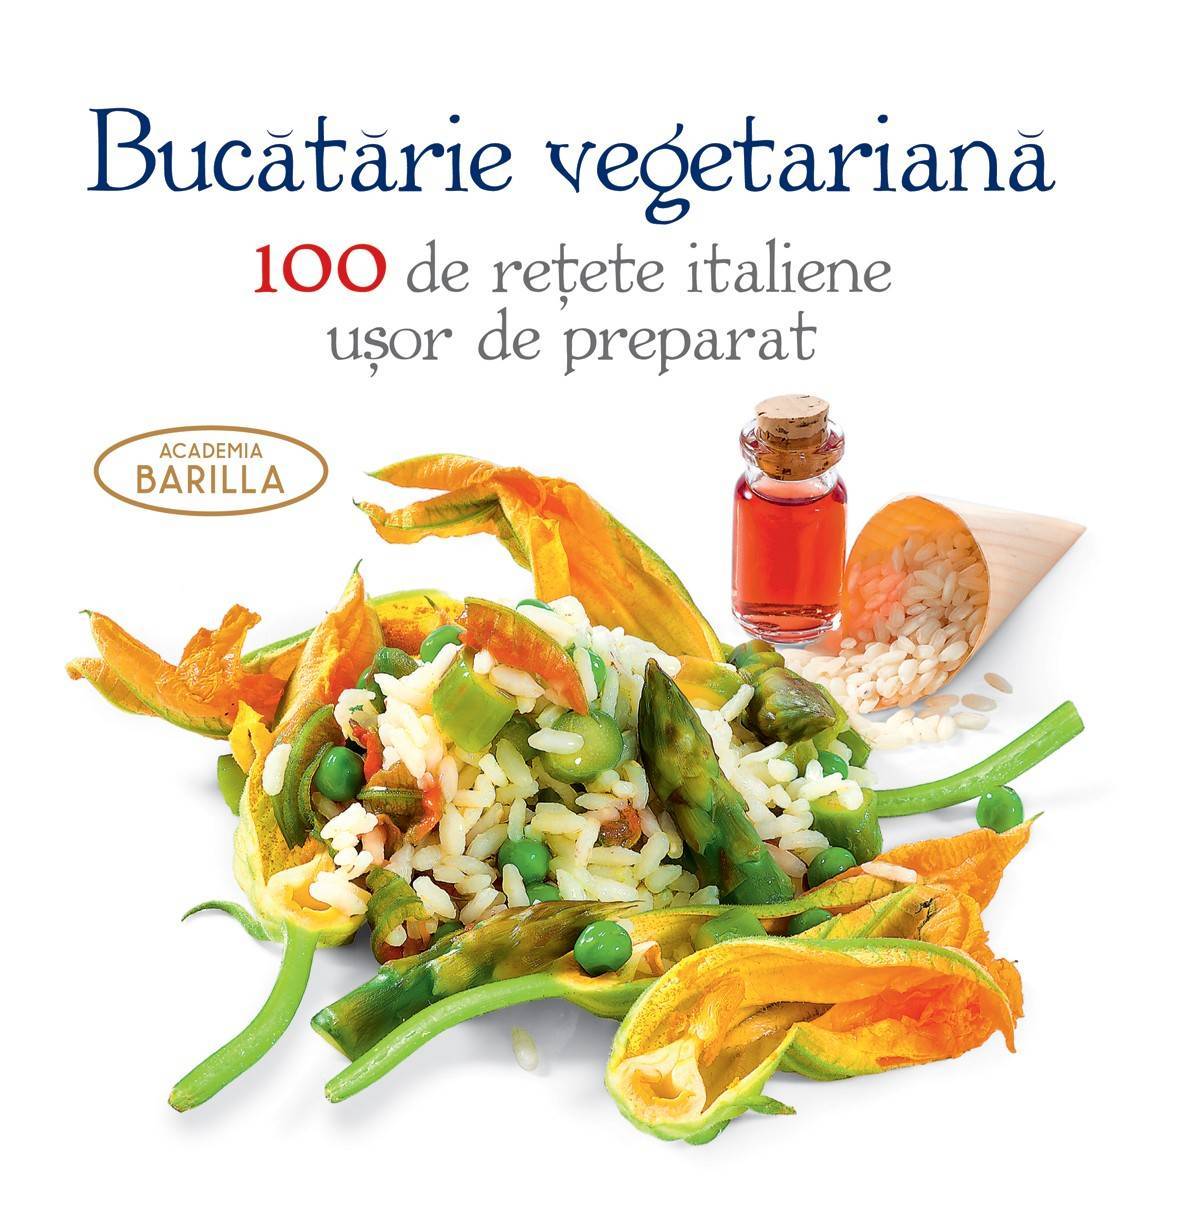 Bucatarie vegetariana - Academia Barilla - carte - DPH